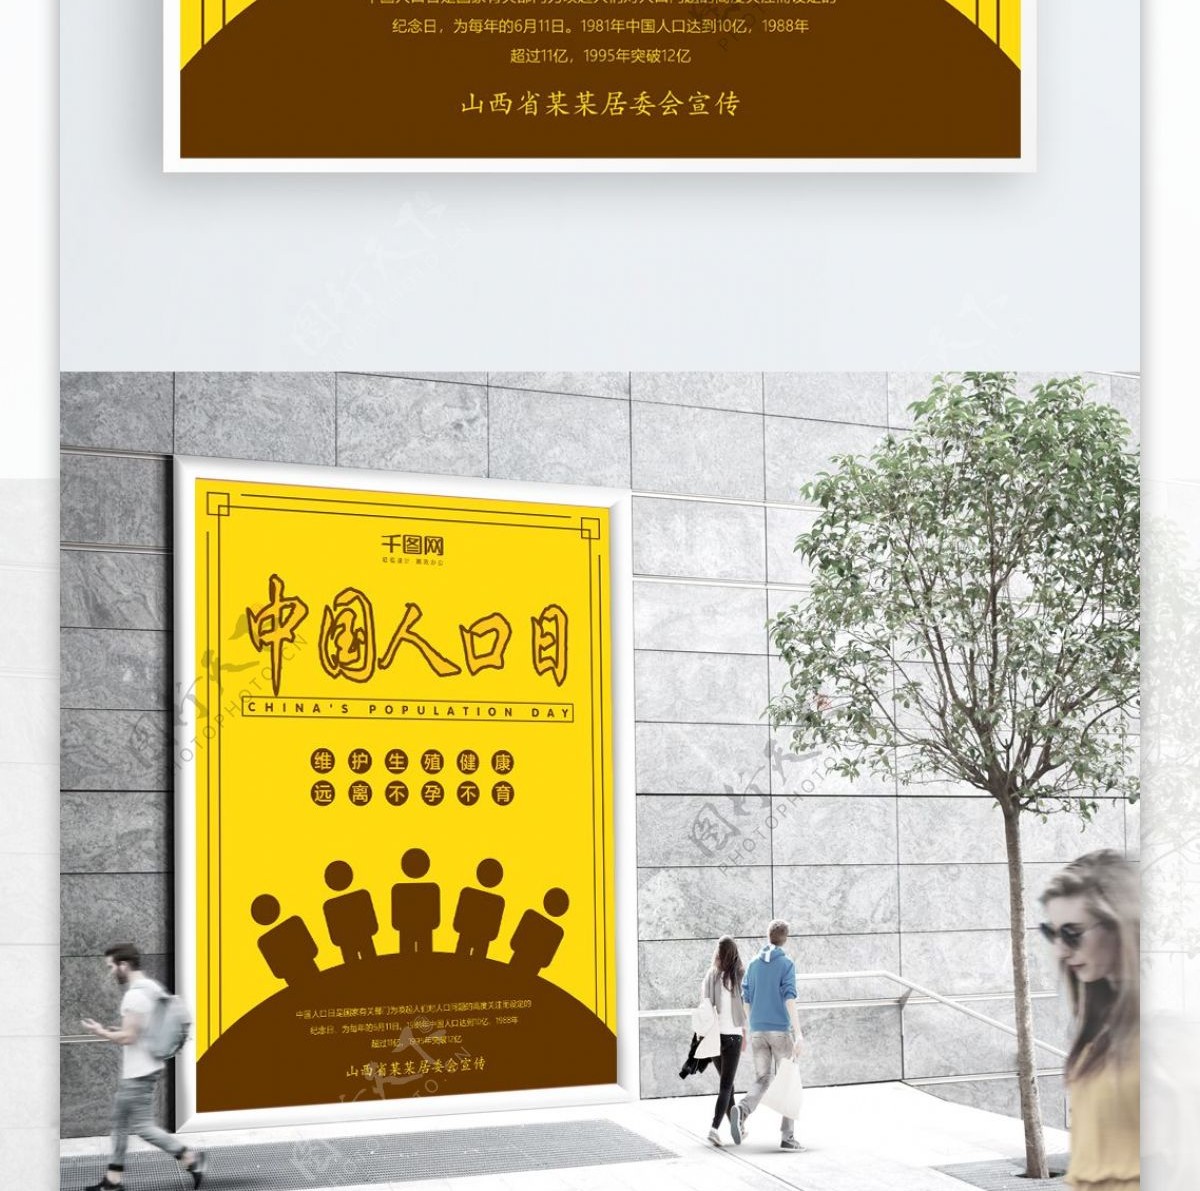 黄色卡通手绘中国人口日节日海报